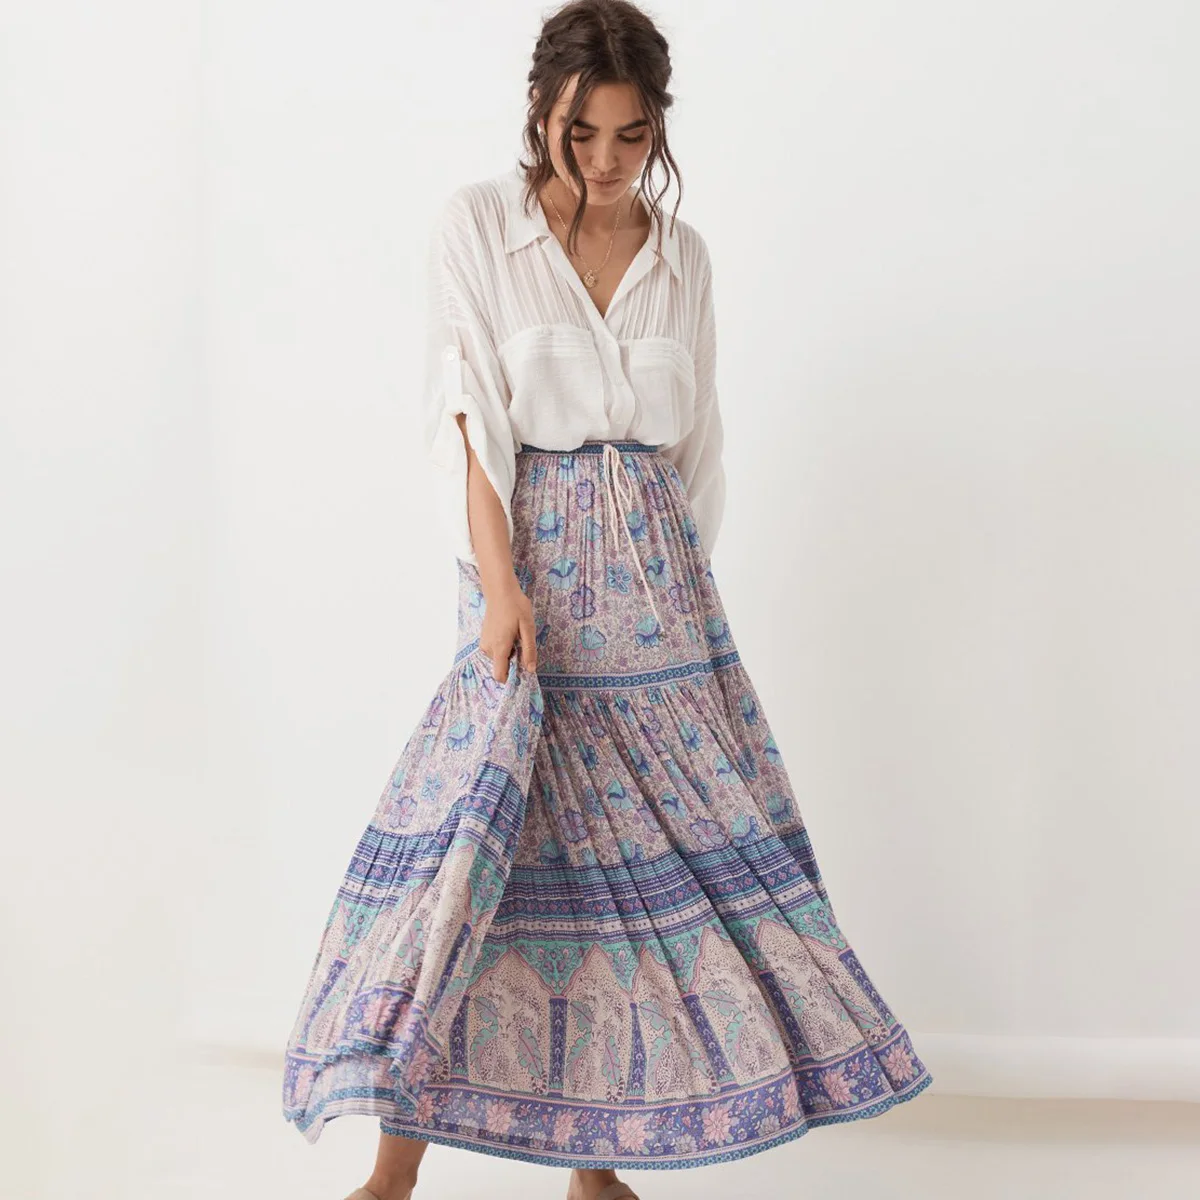 Lalic Boho Maxi Skirt Women Summer Autumn 2019 Floral Print High Waist